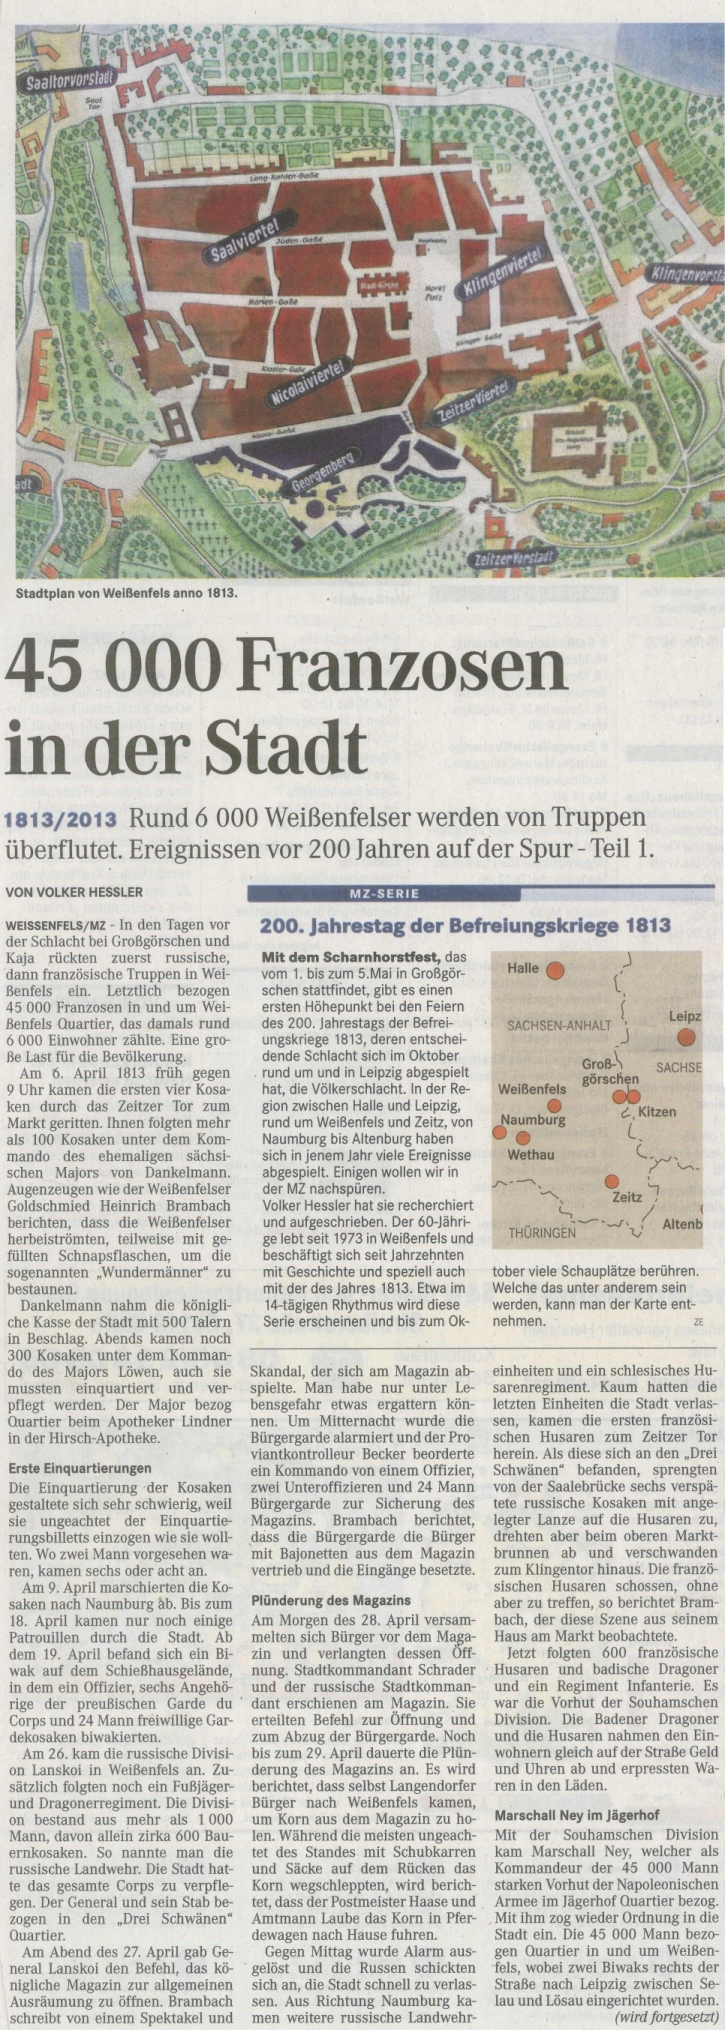 Reihe: "Ereignissen vor 200 Jahren auf der Spur - Teil I. - Mitteldeutsche Zeitung vom 19.04.2013